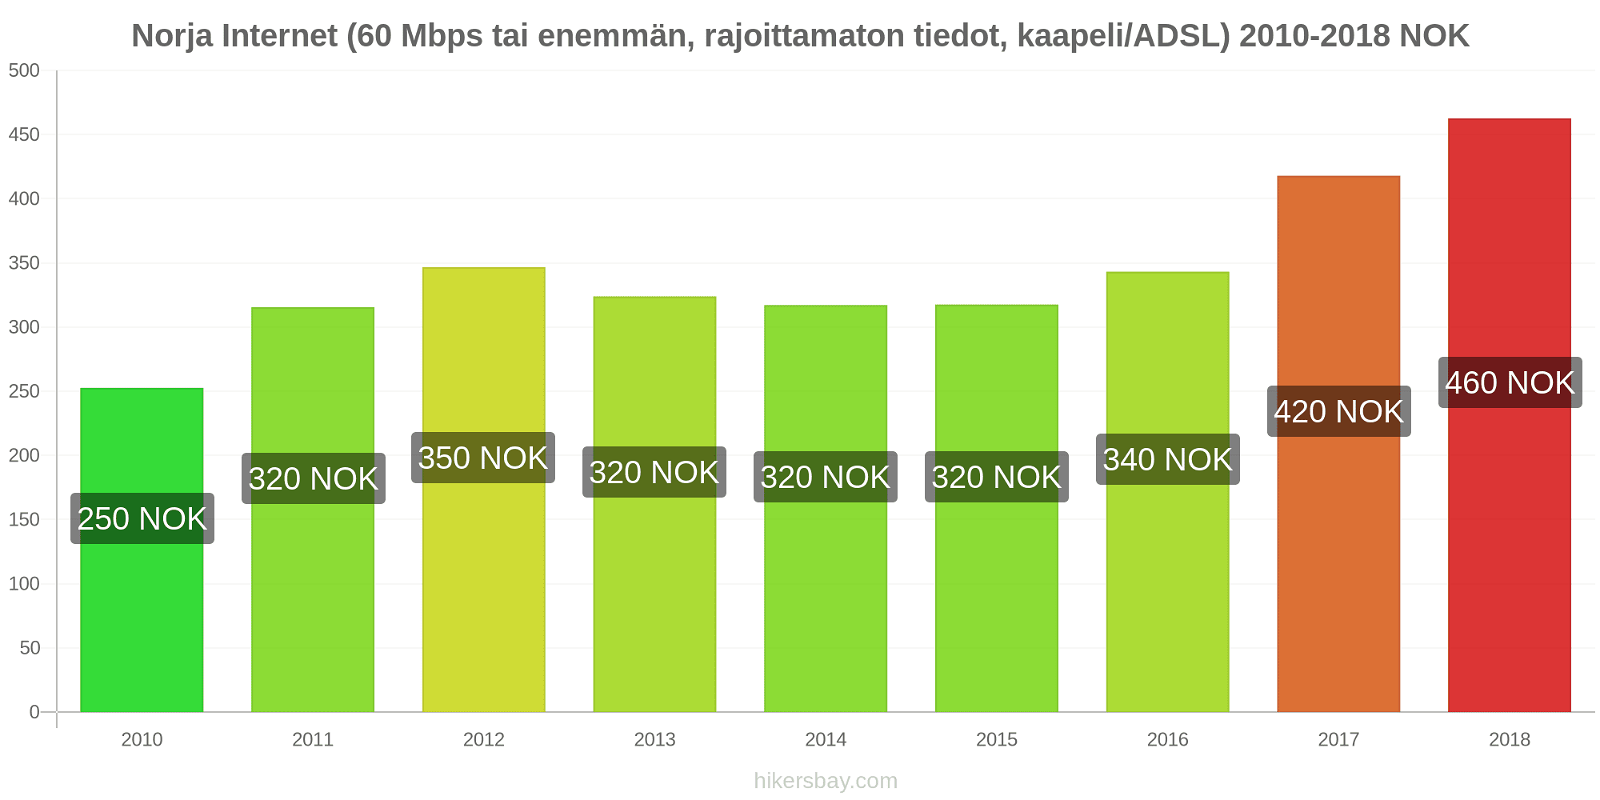 Norja hintojen muutokset Internet (60 Mbps tai enemmän, rajoittamaton tiedot, kaapeli/ADSL) hikersbay.com